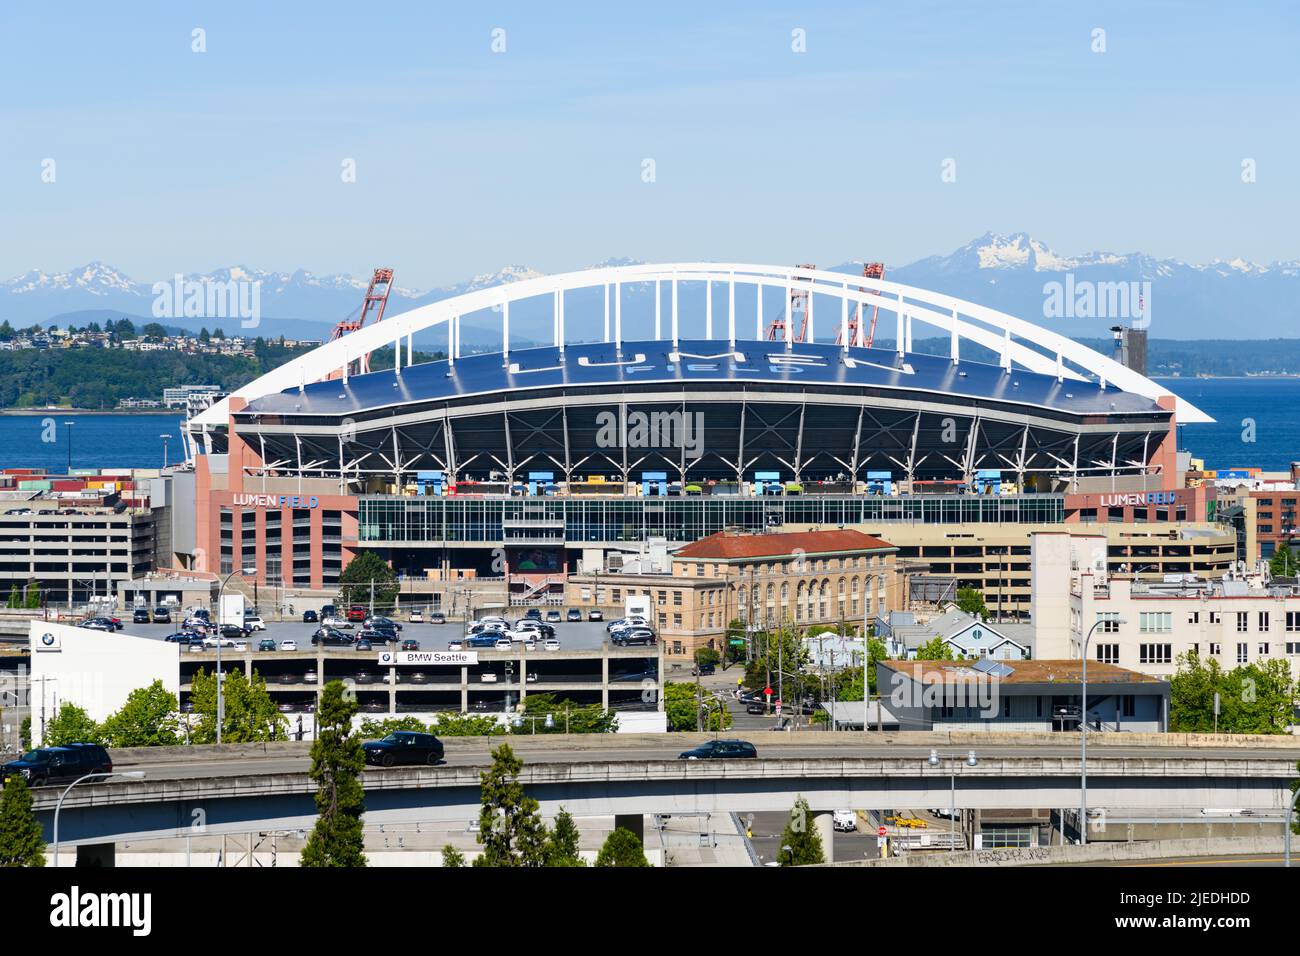 Seattle - Giugno 25, Lumen Field a Seattle con il nome sul tetto del titolare della sposorship Lumen Technologies in una giornata estiva soleggiata Foto Stock